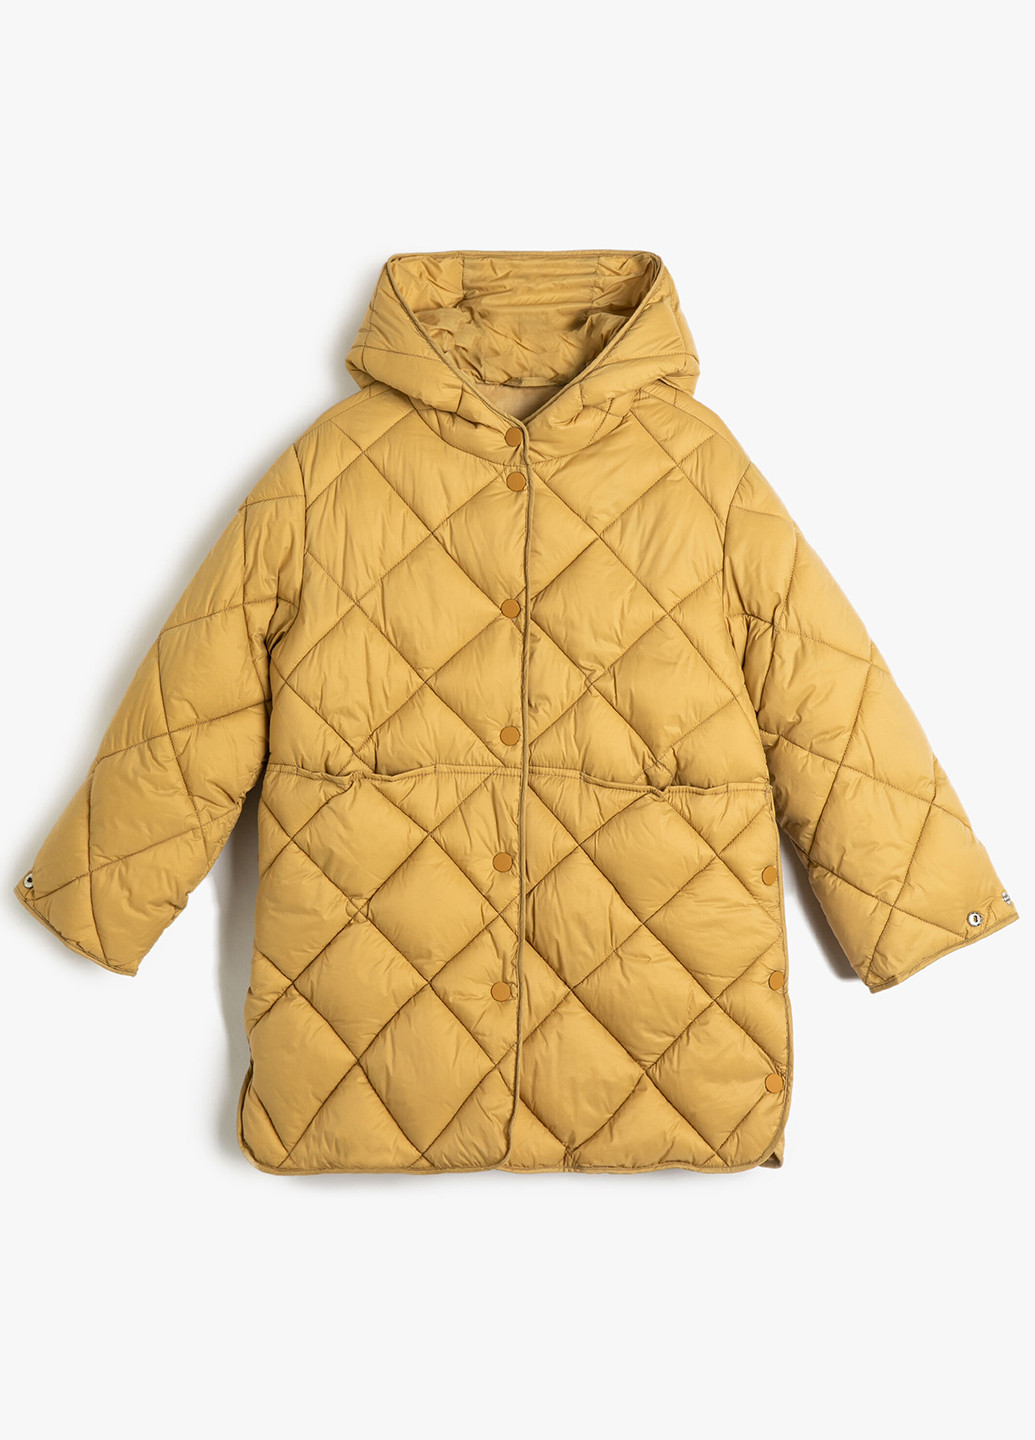 Горчичная демисезонная куртка куртка-пальто KOTON